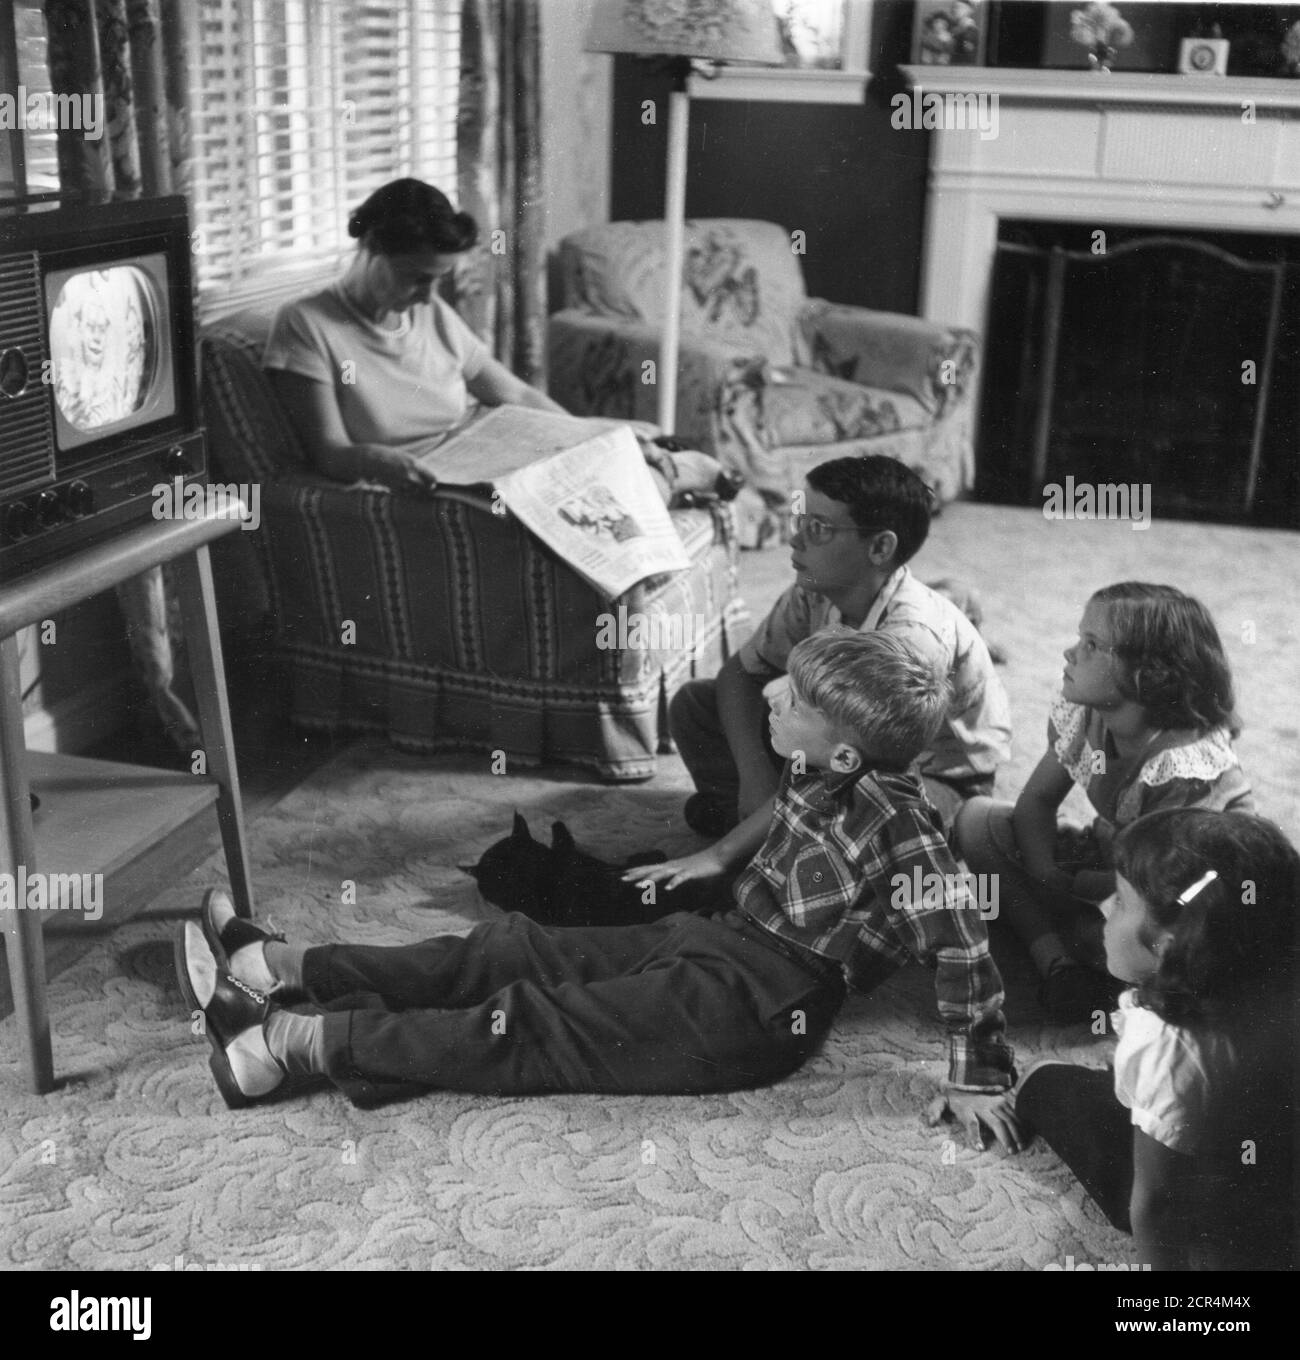 Eine Familie - Mutter, vier Kinder und Haustier - genießen Sie den Fernseher in ihrem Wohnzimmer, Washington, DC, 1955. (Foto von RBM Vintage Images) Stockfoto